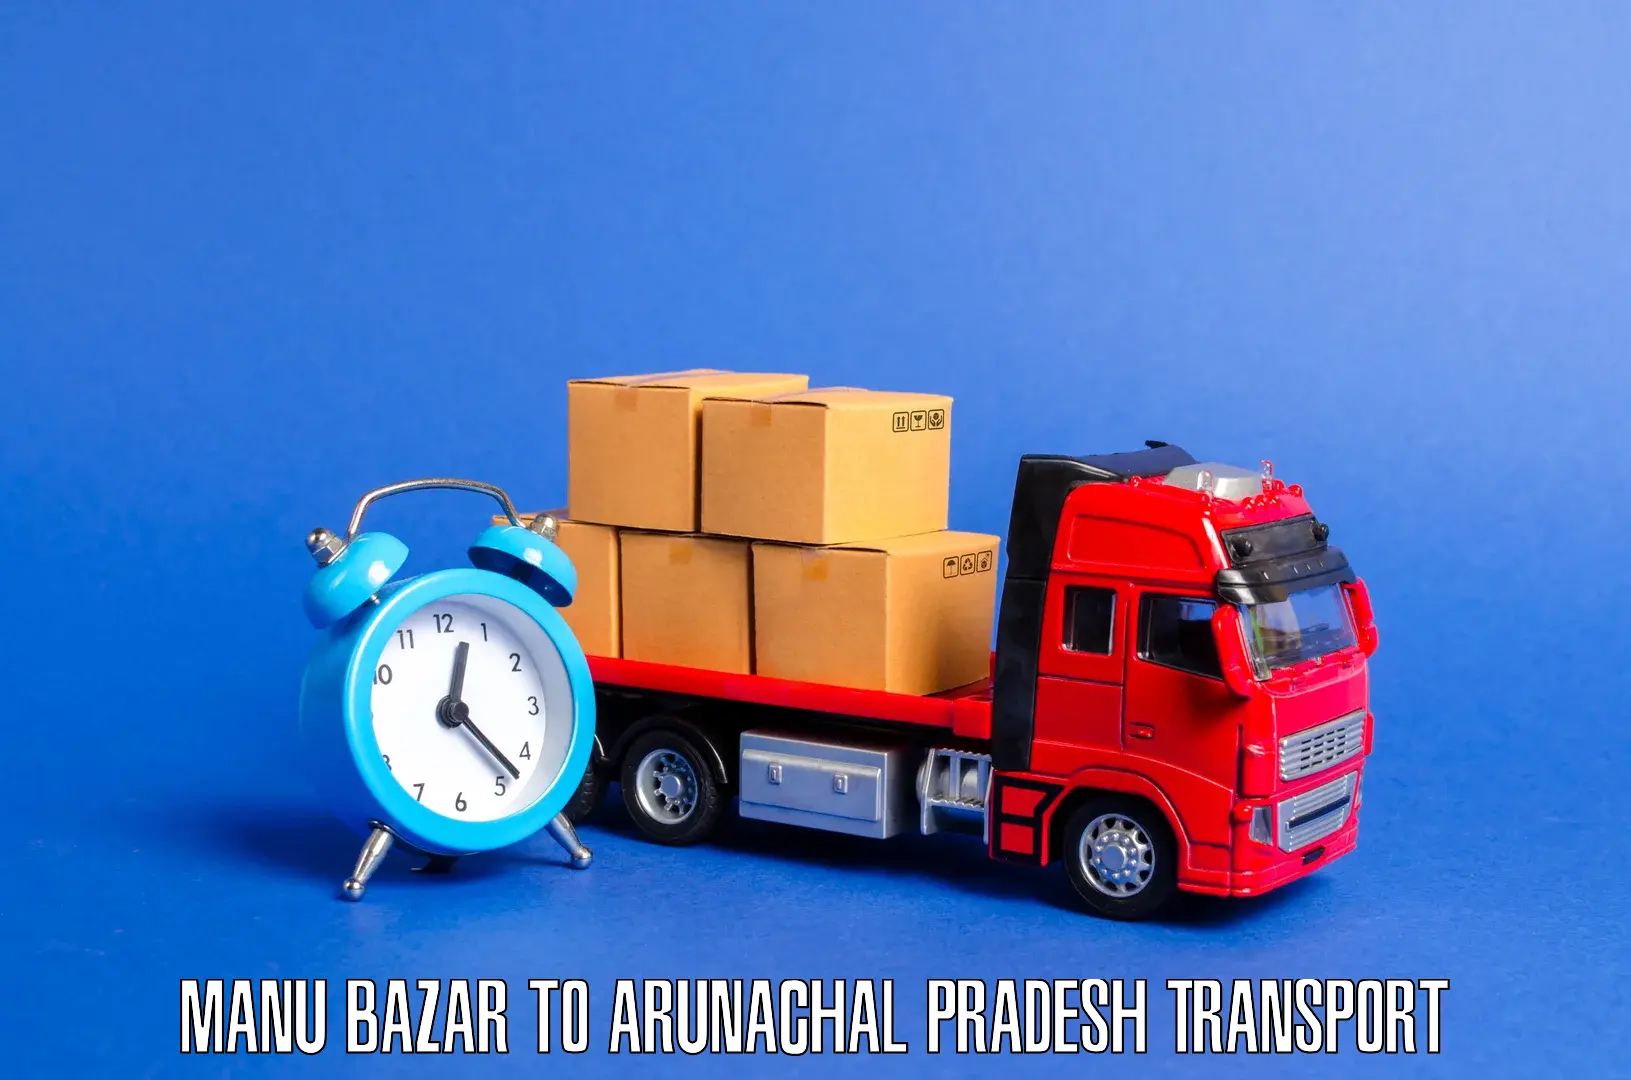 Express transport services Manu Bazar to Arunachal Pradesh